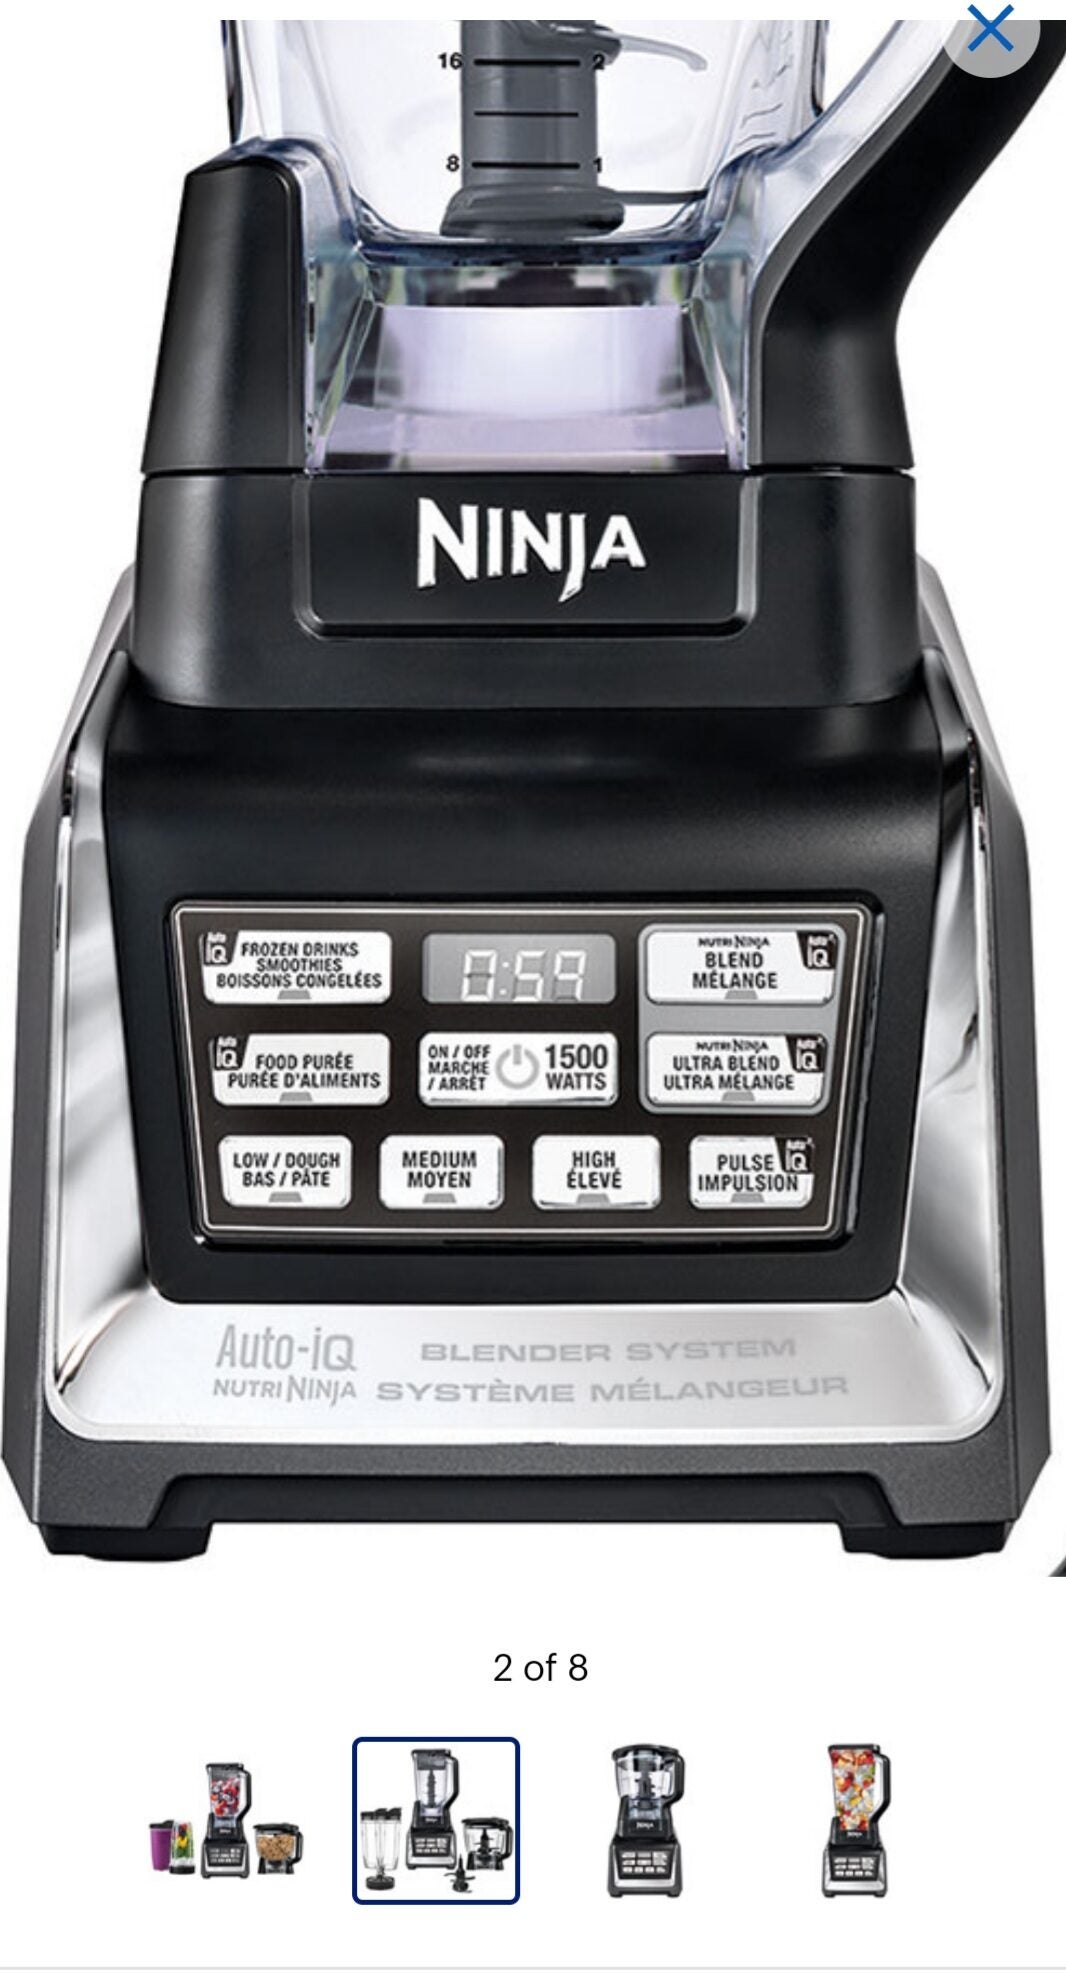 Best Ninja Nutri Auto Iq